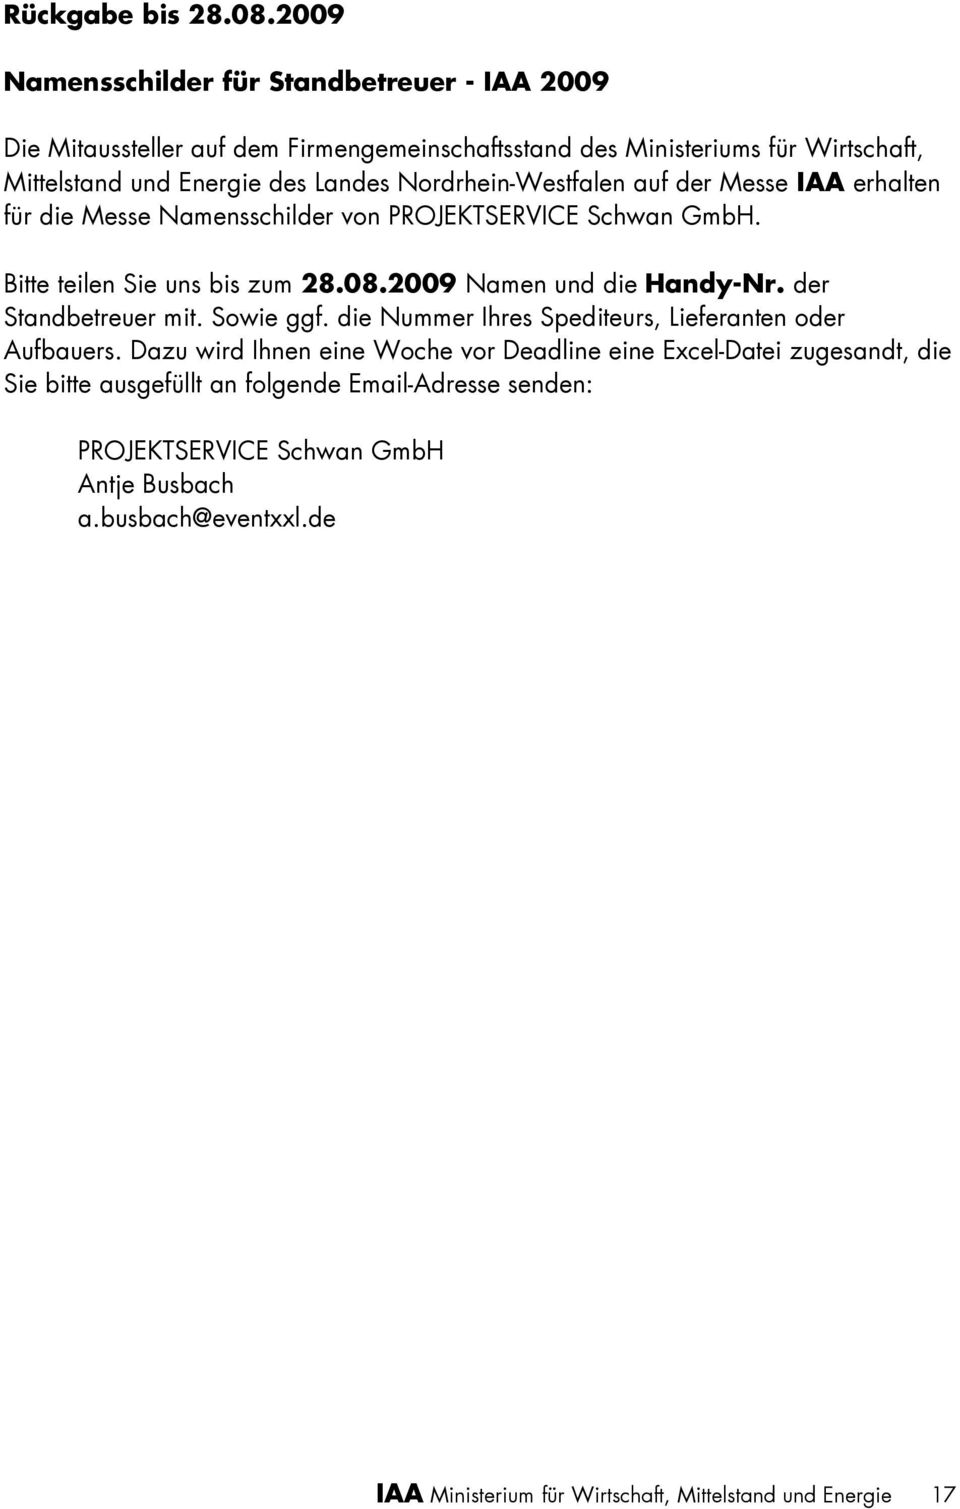 Nordrhein-Westfalen auf der Messe IAA erhalten für die Messe Namensschilder von PROJEKTSERVICE Schwan GmbH. Bitte teilen Sie uns bis zum 28.08.2009 Namen und die Handy-Nr.